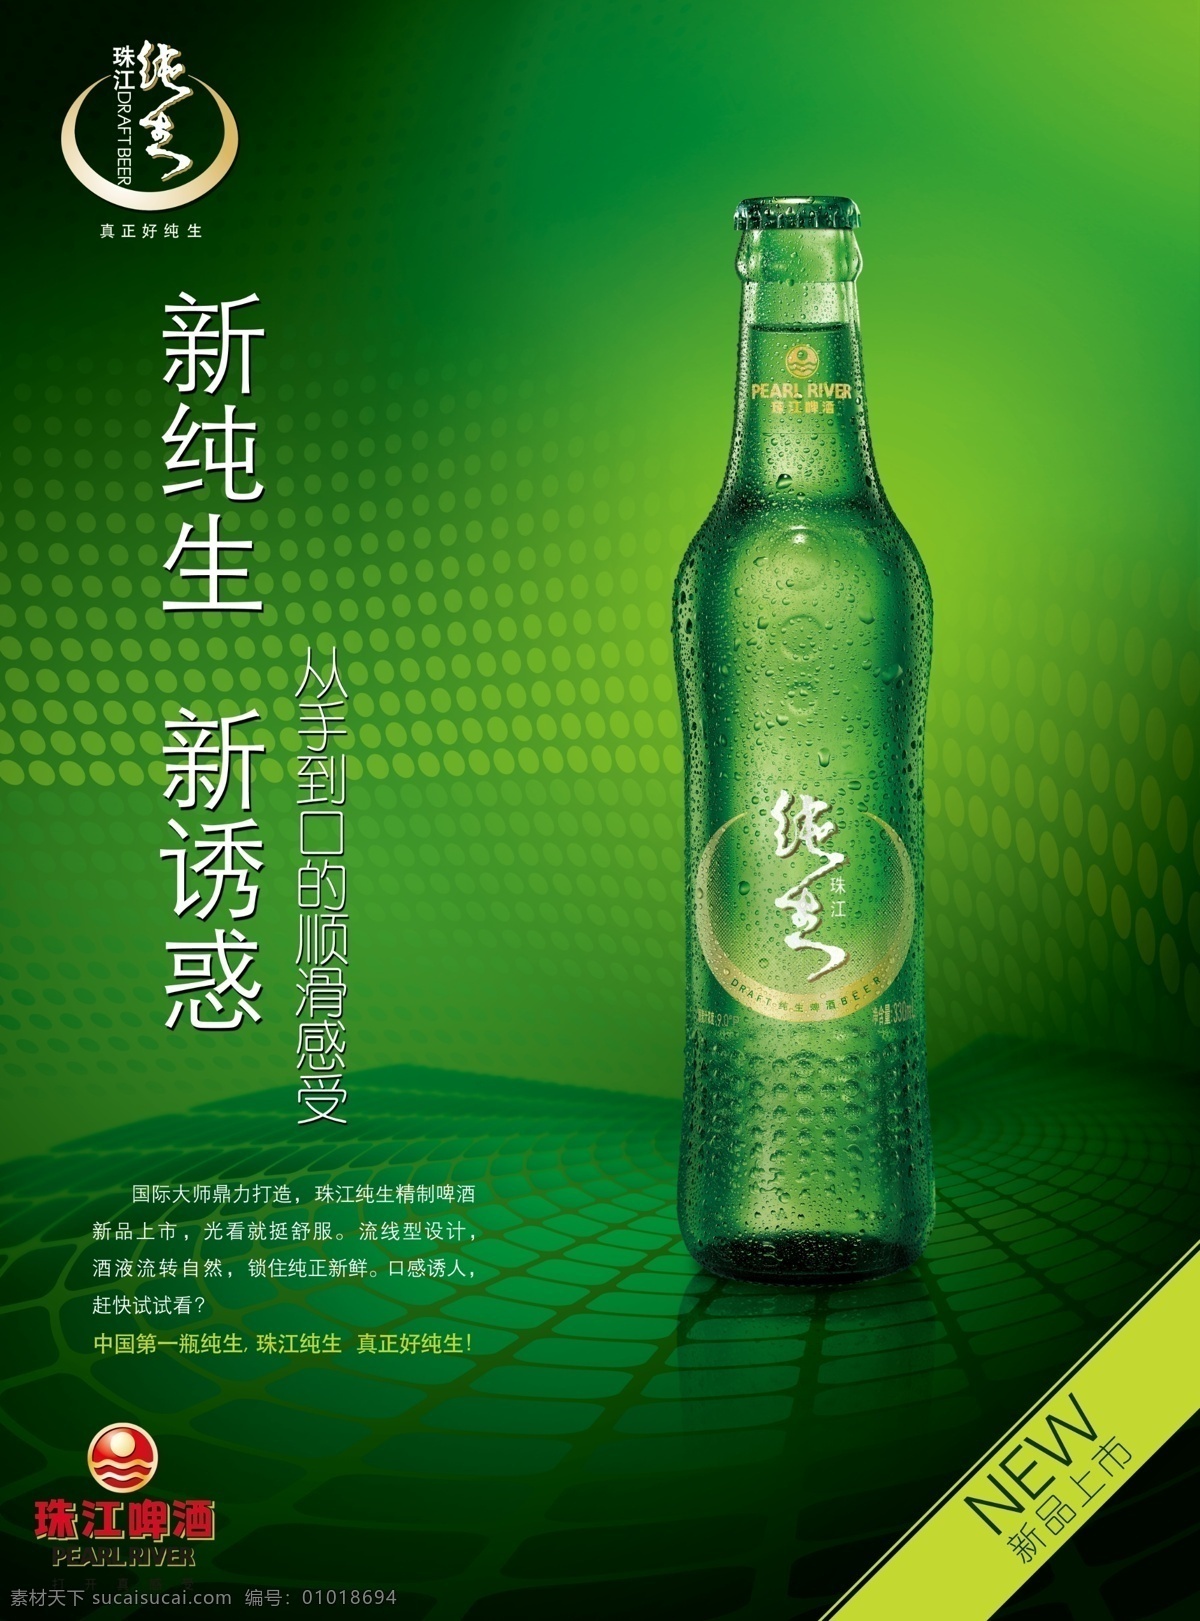 珠江啤酒广告 啤酒 珠江啤酒 新纯生 新诱惑 新品上市 啤酒瓶 纯生啤酒 广告设计模板 源文件